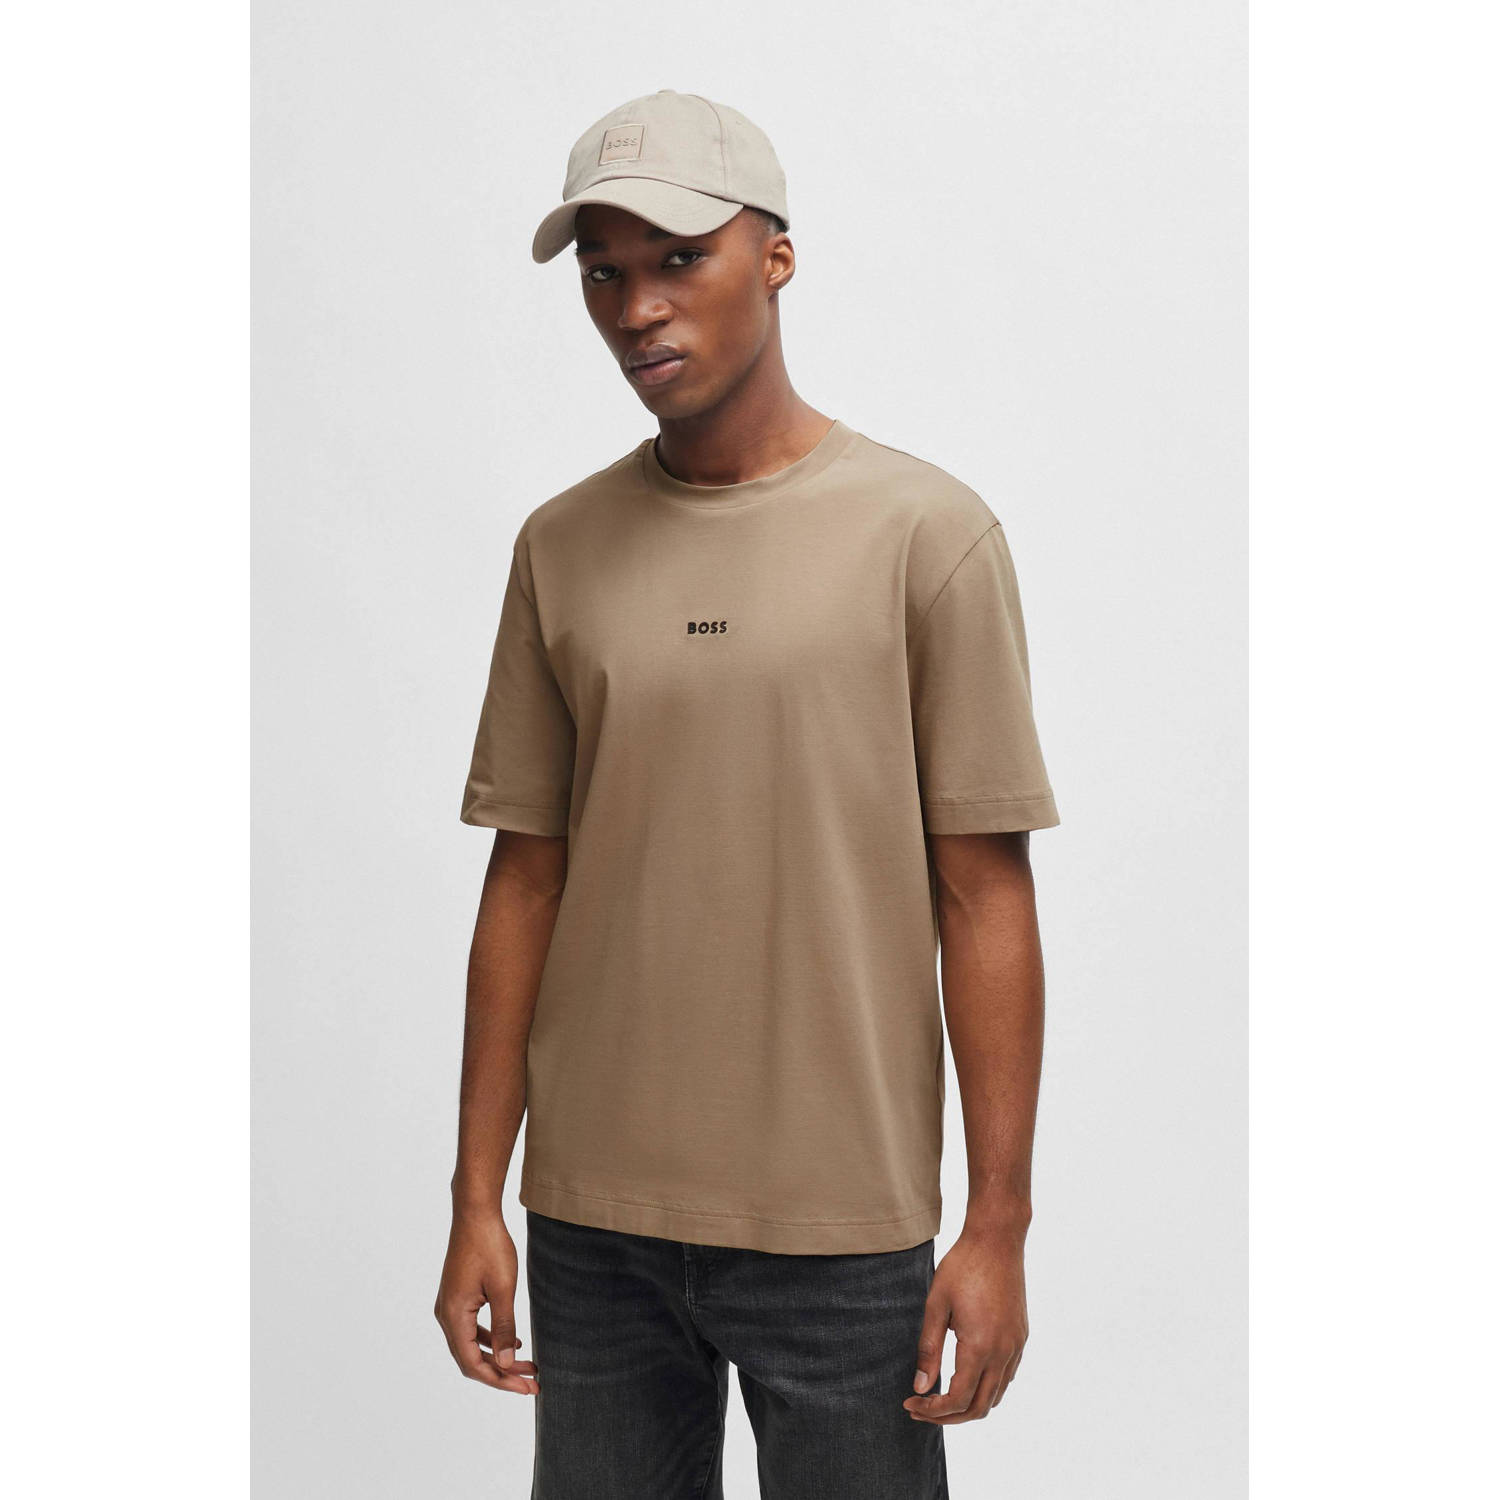 BOSS T-shirt TChup met logo open brown